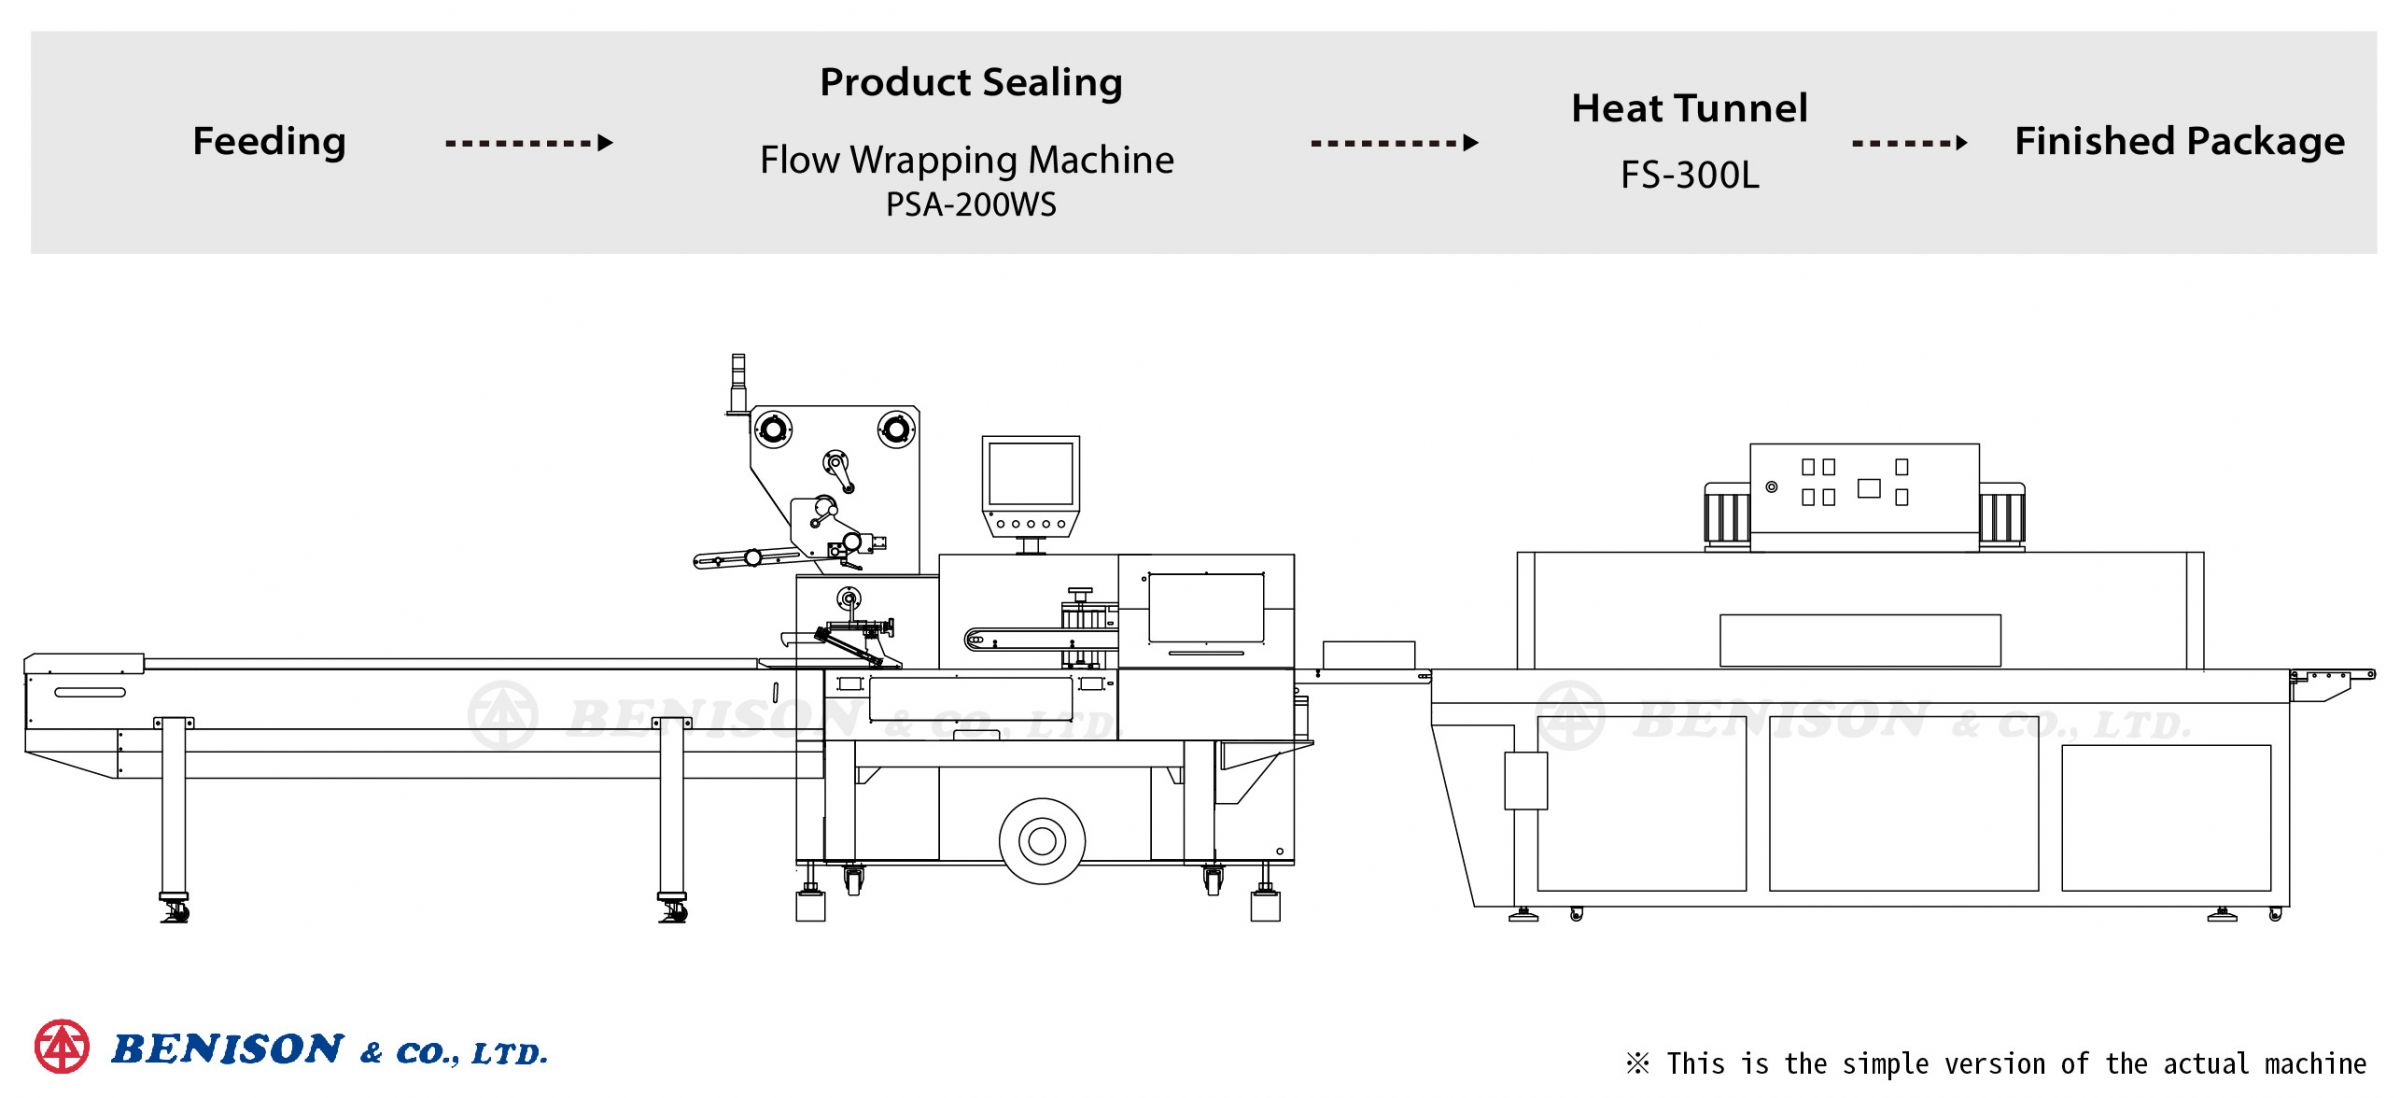 Maszyna do pakowania przepływowego PSA-200WS + Tunel cieplny FS-300L do rozwiązań produktowych na pokrywki gniazda